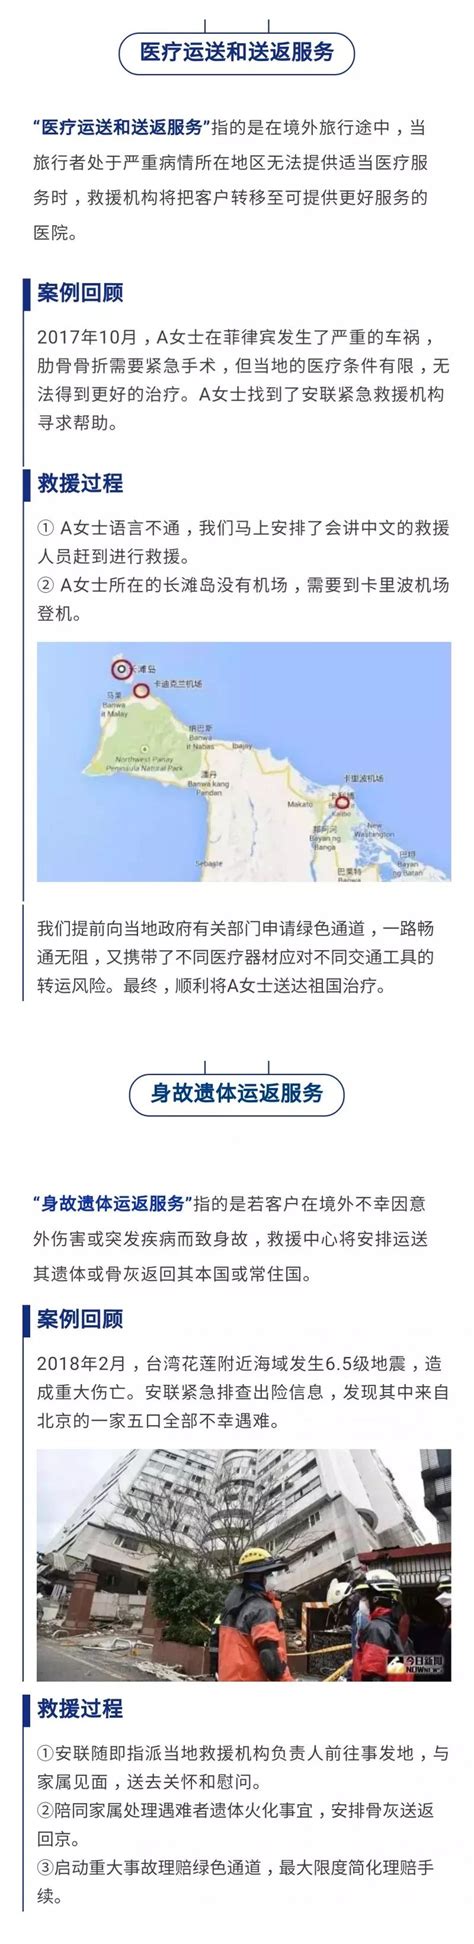 文旅部今年已取消30家旅行社出境游业务 北京8家_手机新浪网